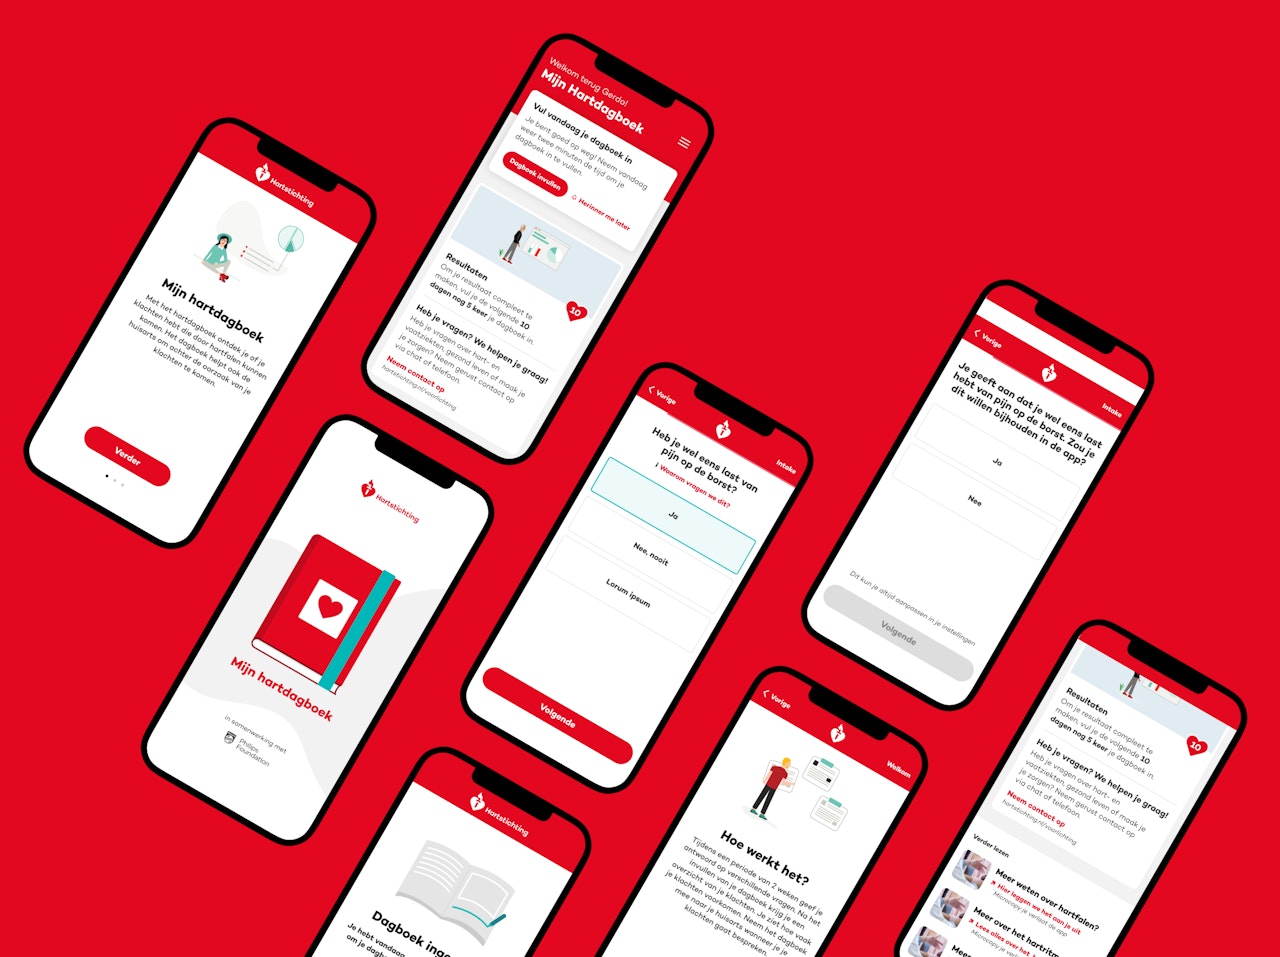 Illustratie van meerdere smartphones naast elkaar op een rode achtergrond met daarop schermafbeeldingen van de hartstichting app.